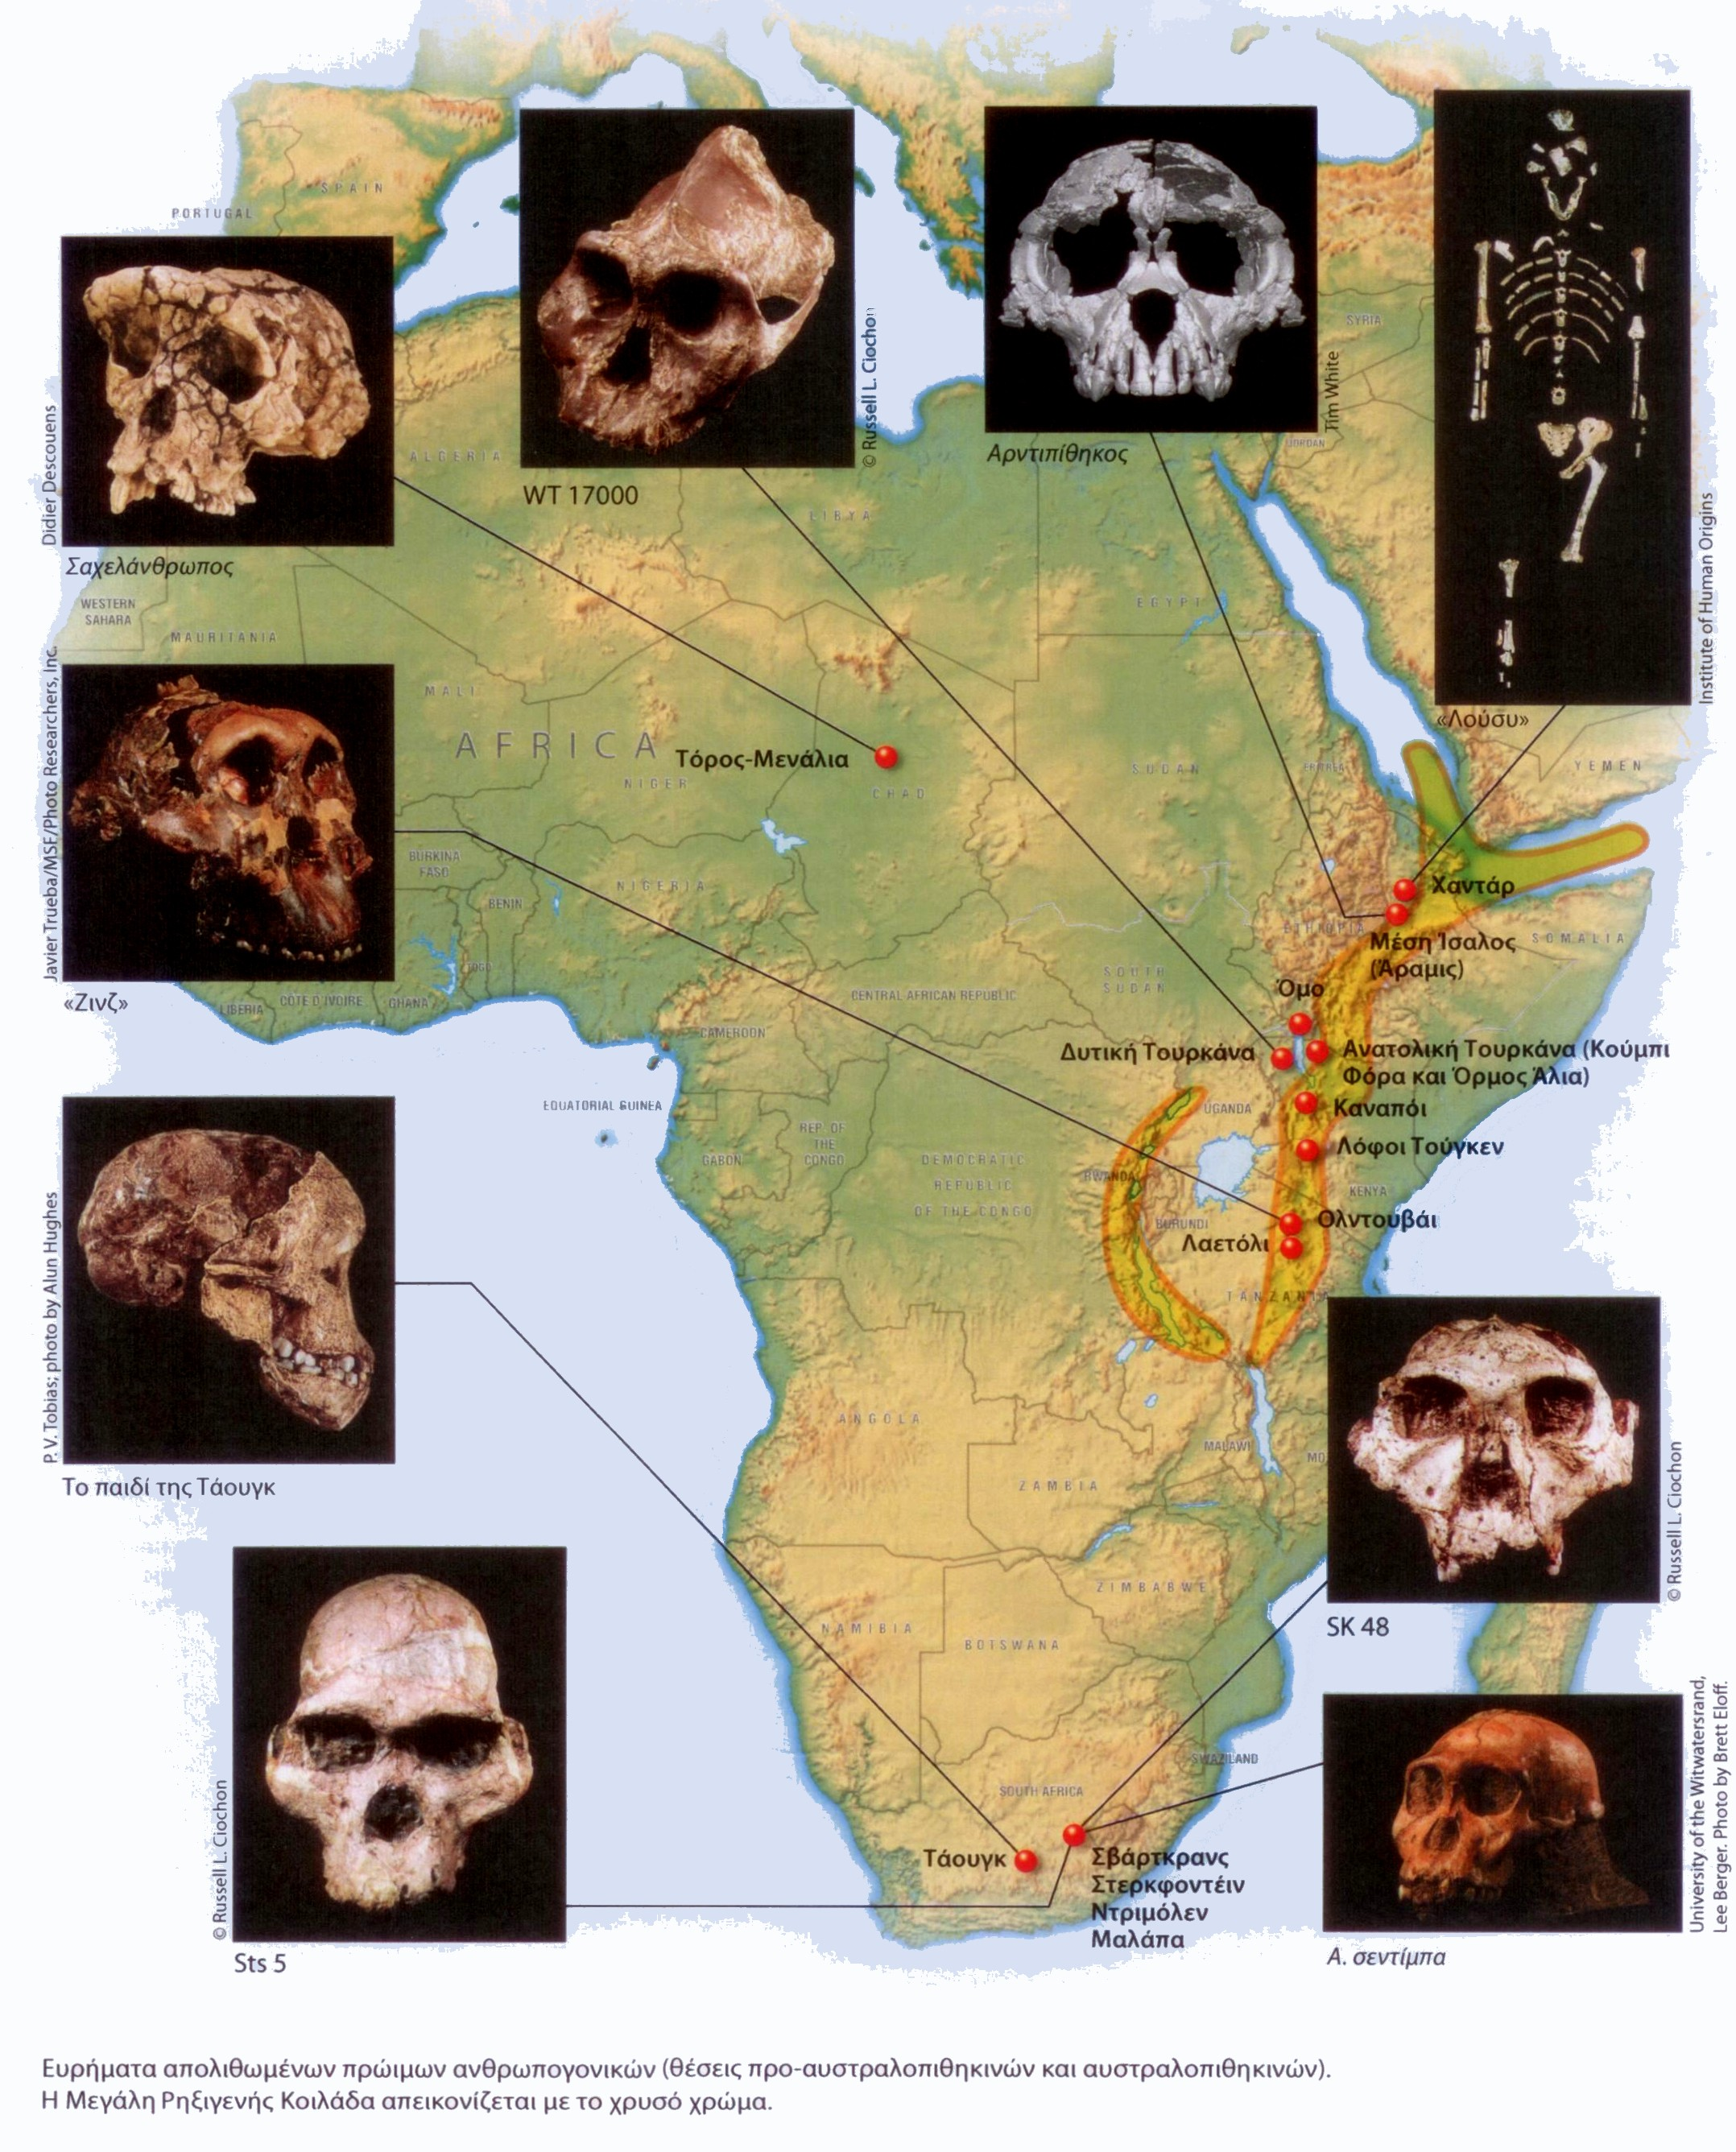 Στην Αφρική έζησε ποικιλία ειδών πρώιμων ανθρωπογονικών με ευρεία γεωγραφική κατανομή Τρεις κύριες ομάδες πρώιμων ανθρωπογονικών (βάσει χρονολογικής